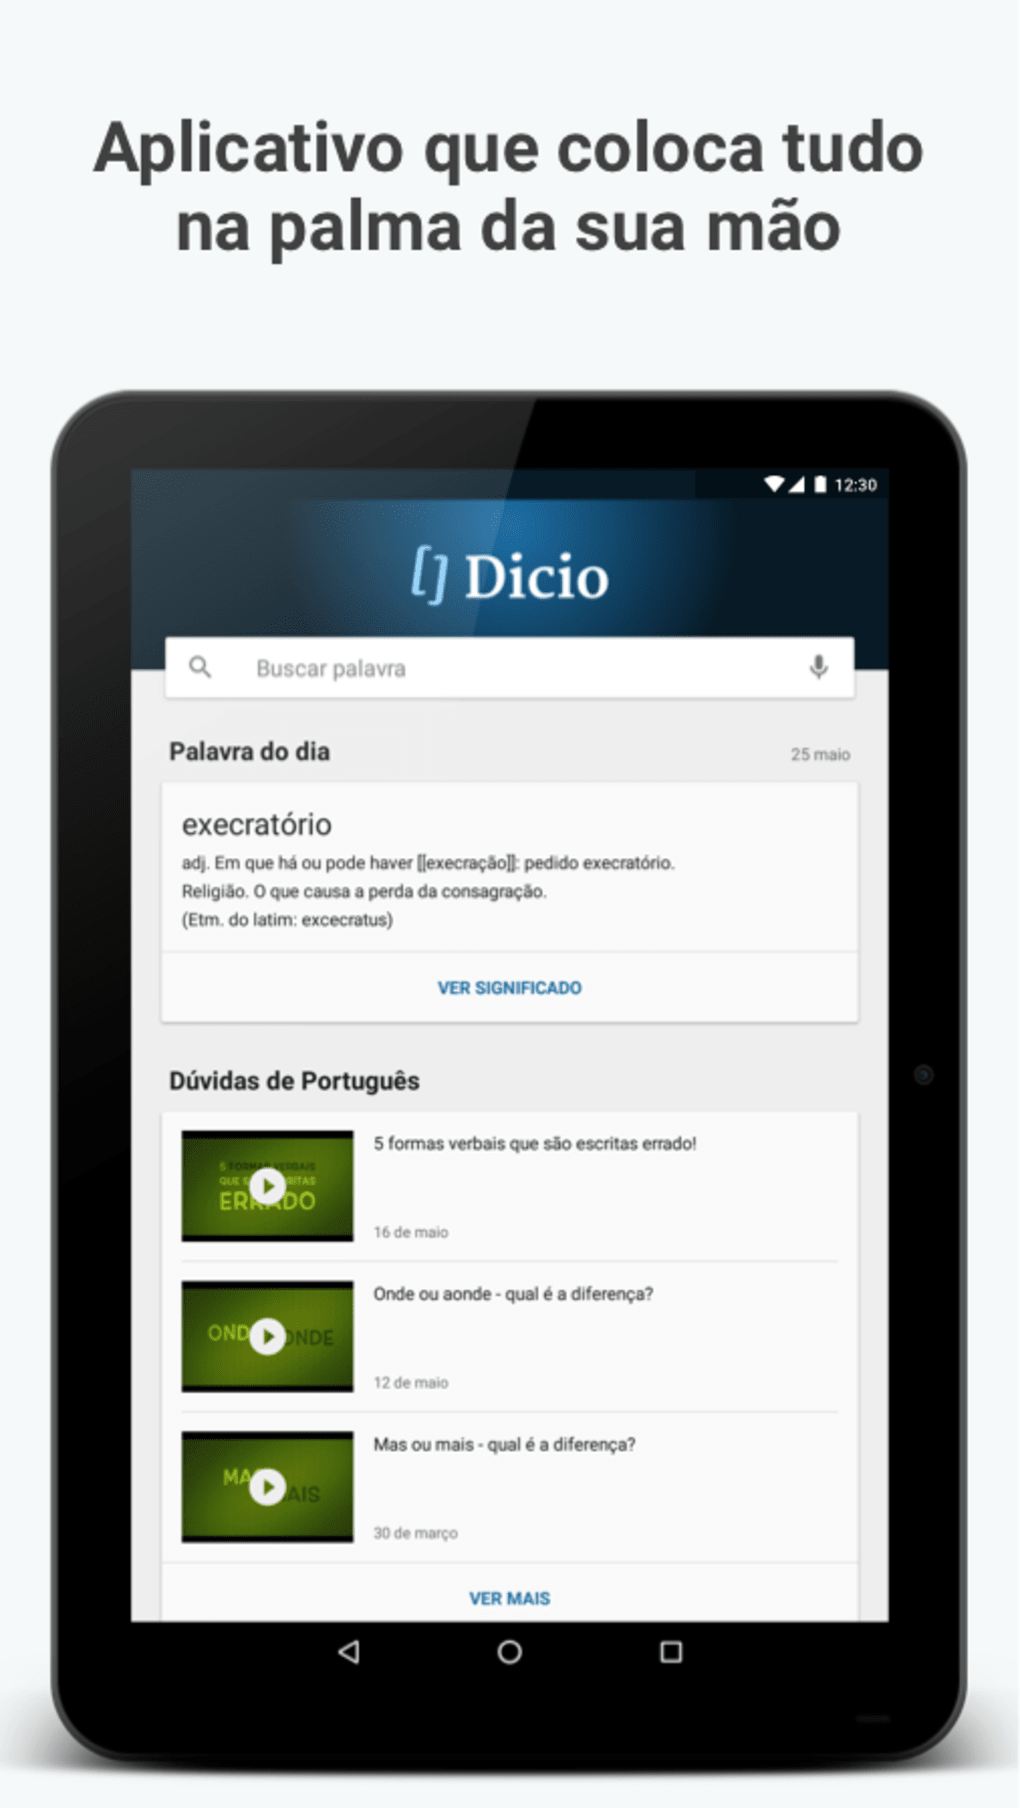 Cool - Dicio, Dicionário Online de Português